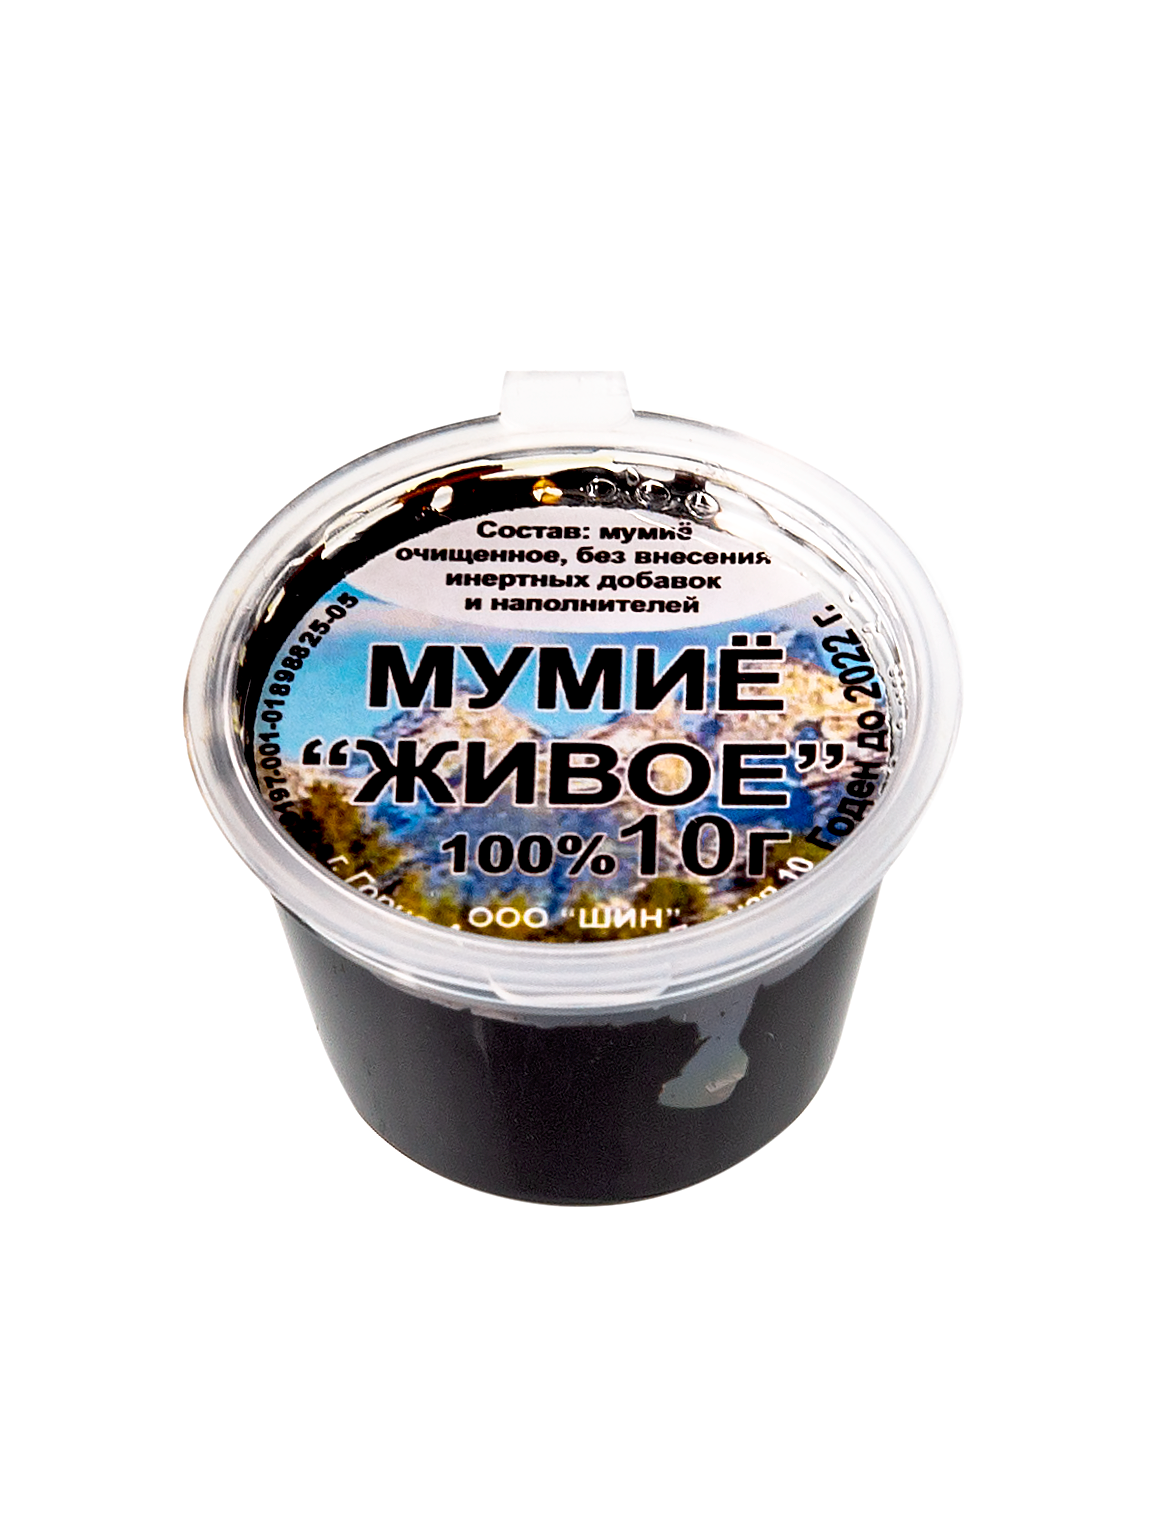 Мумиё Алтайское без добавок в Екатеринбурге